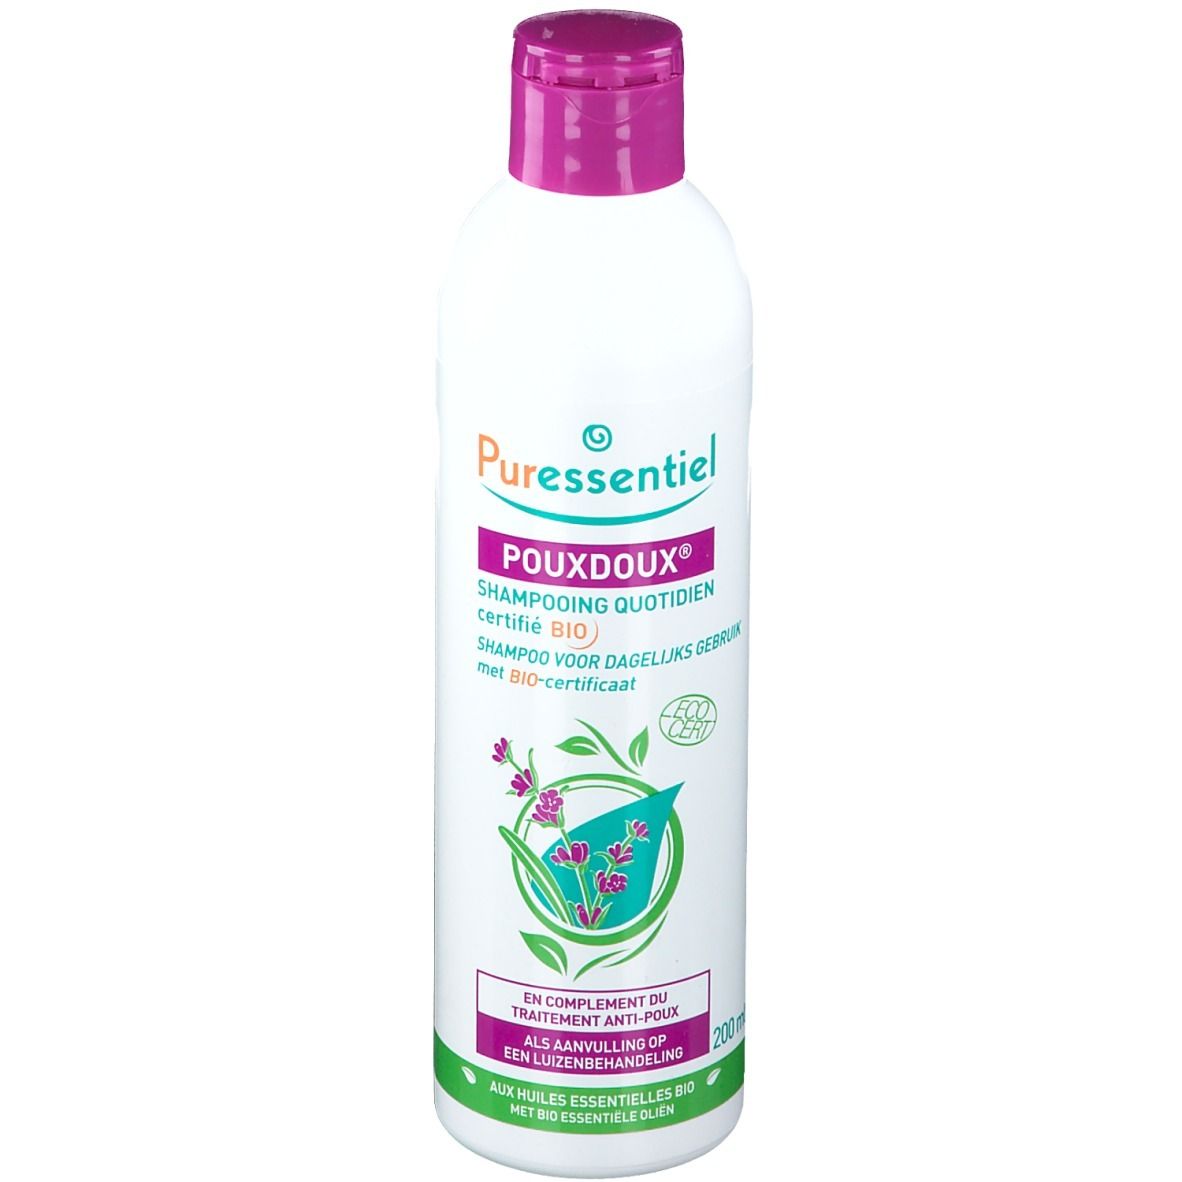 Image of Puressentiel Poudoux® Shampoo zur täglichen Anwendung